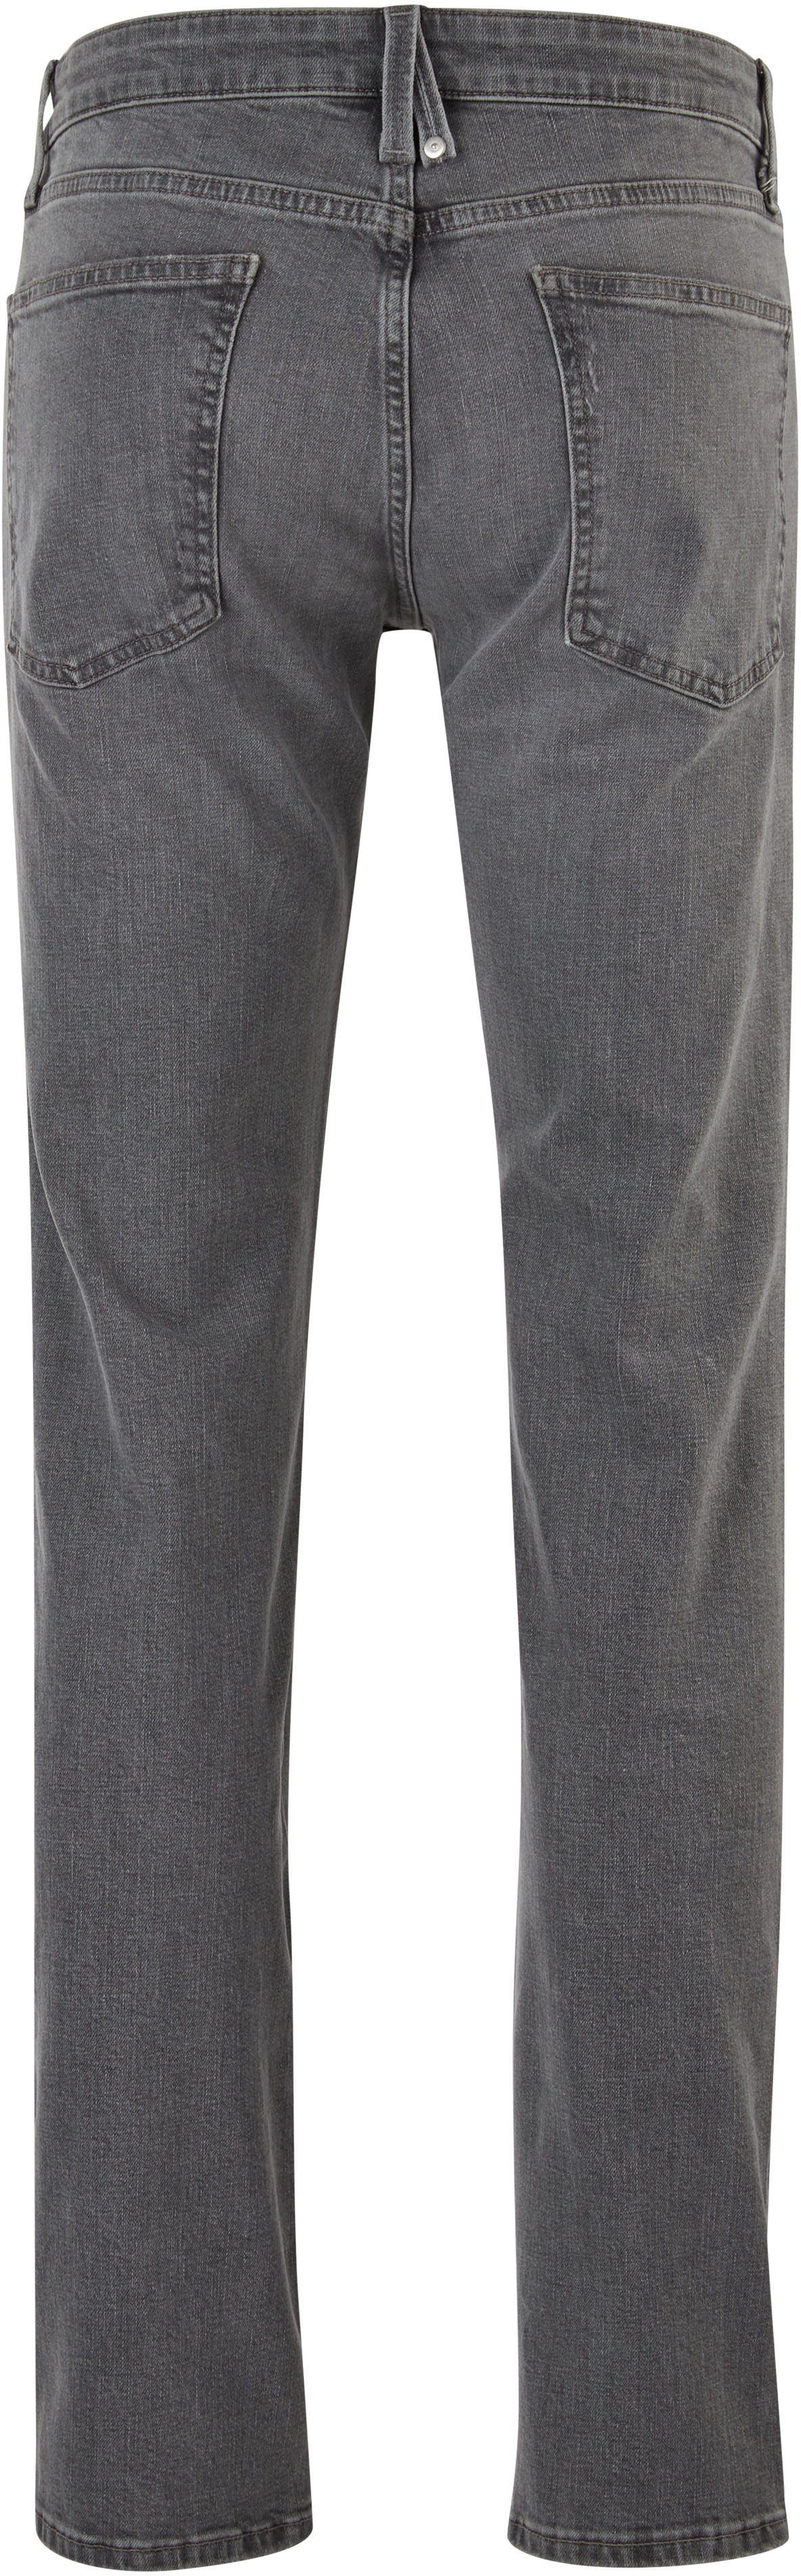 s.Oliver 5-Pocket-Jeans mit stein-grau authentischer Waschung